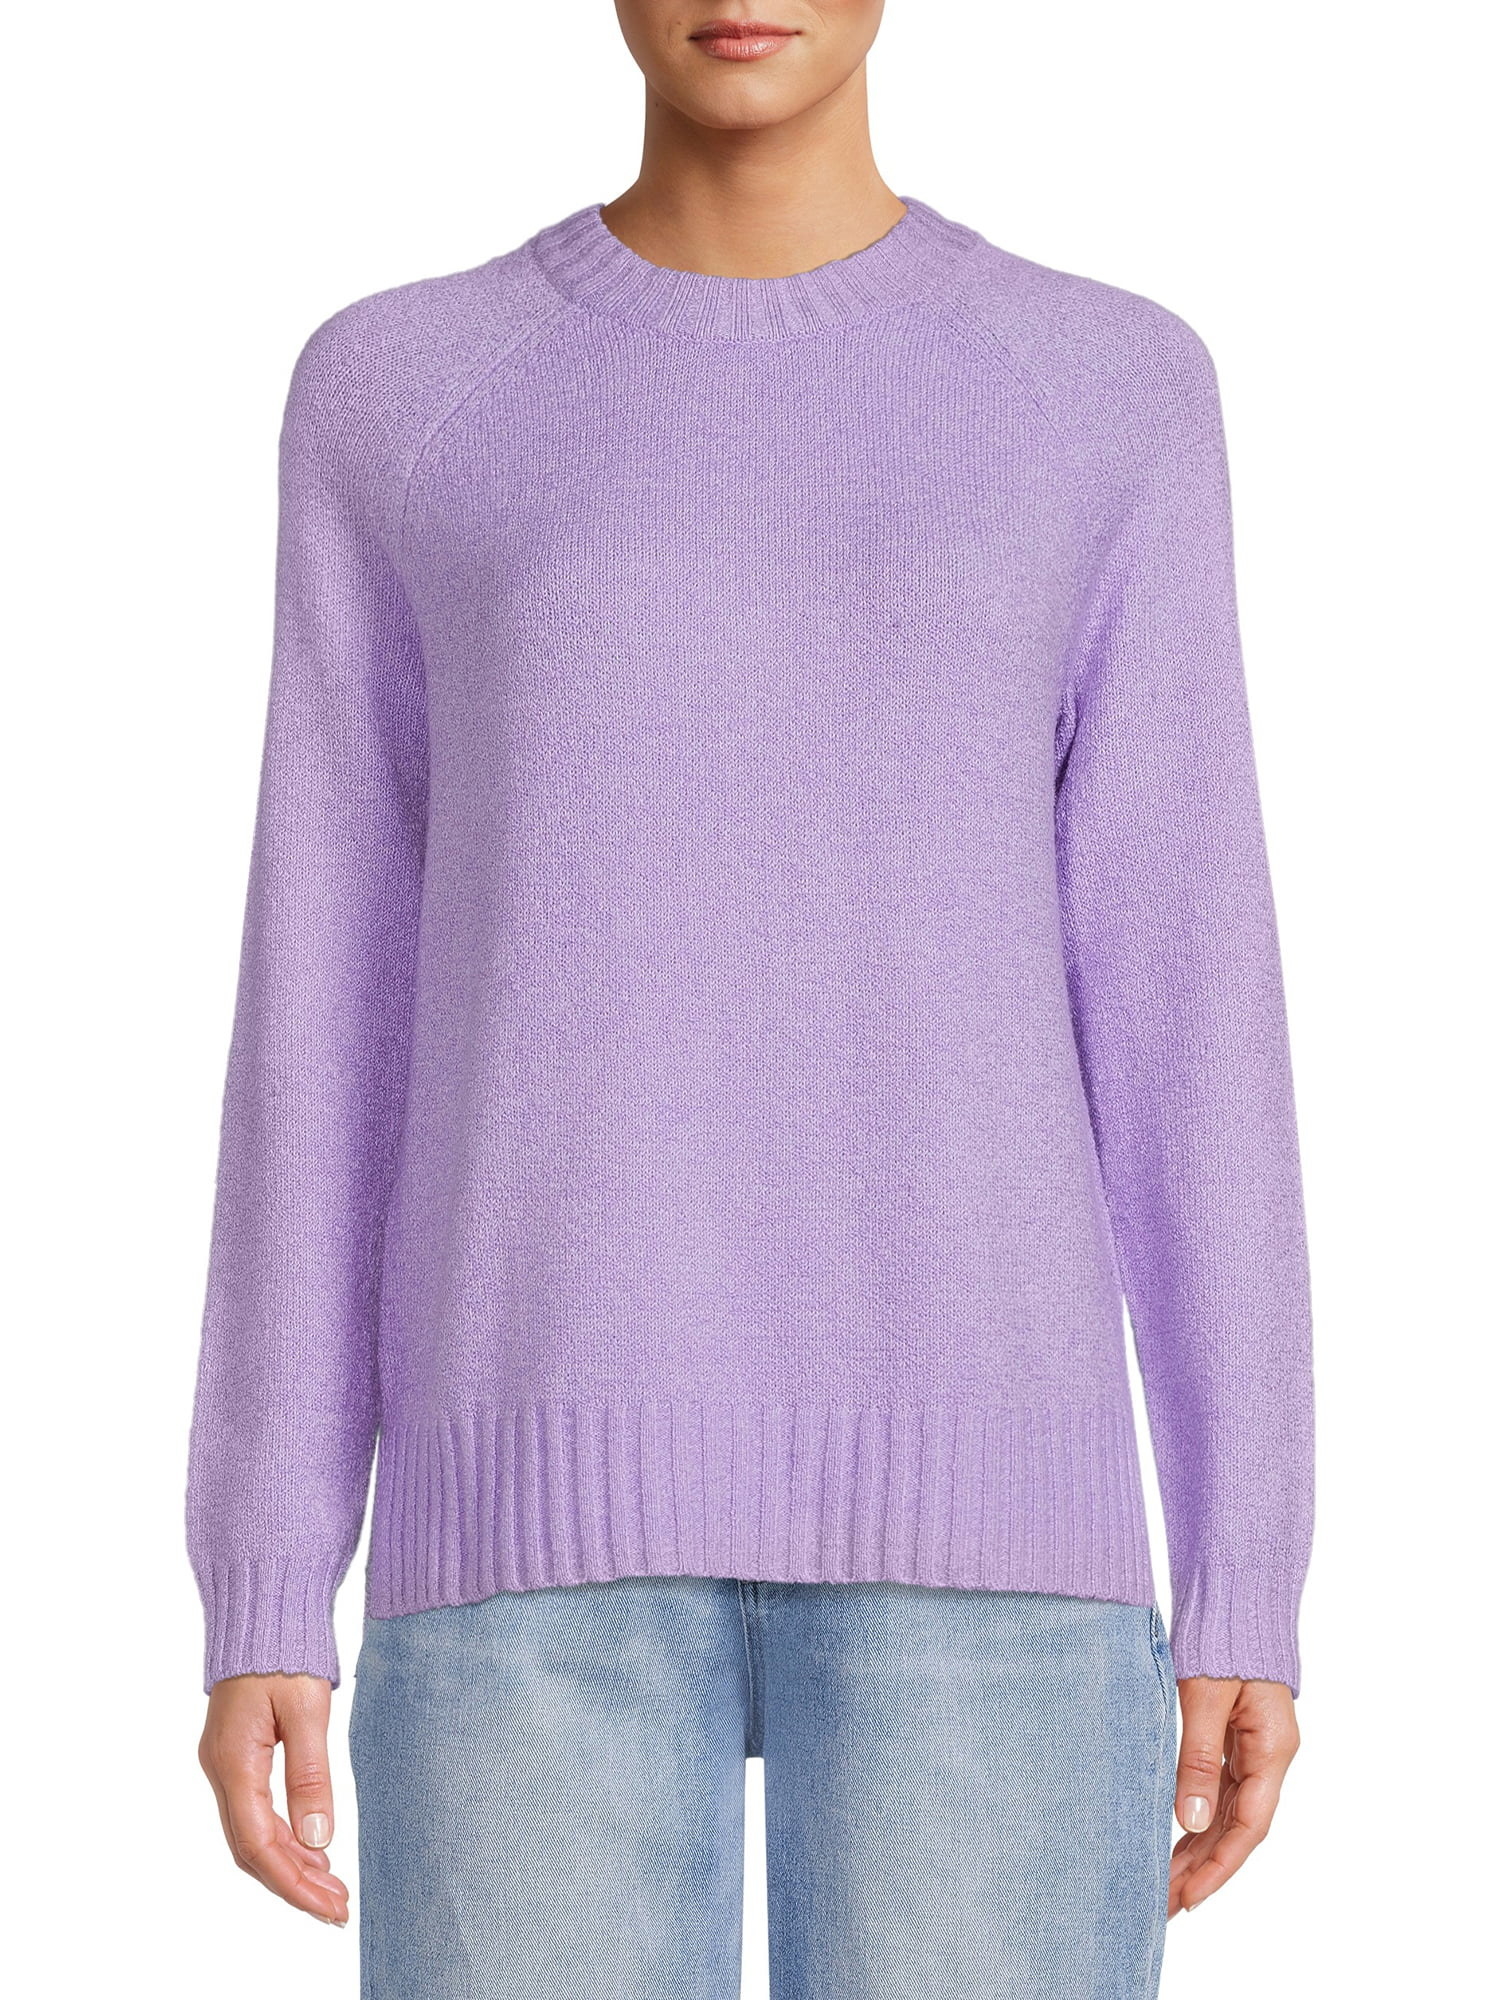 Model wearing the island purple sweater